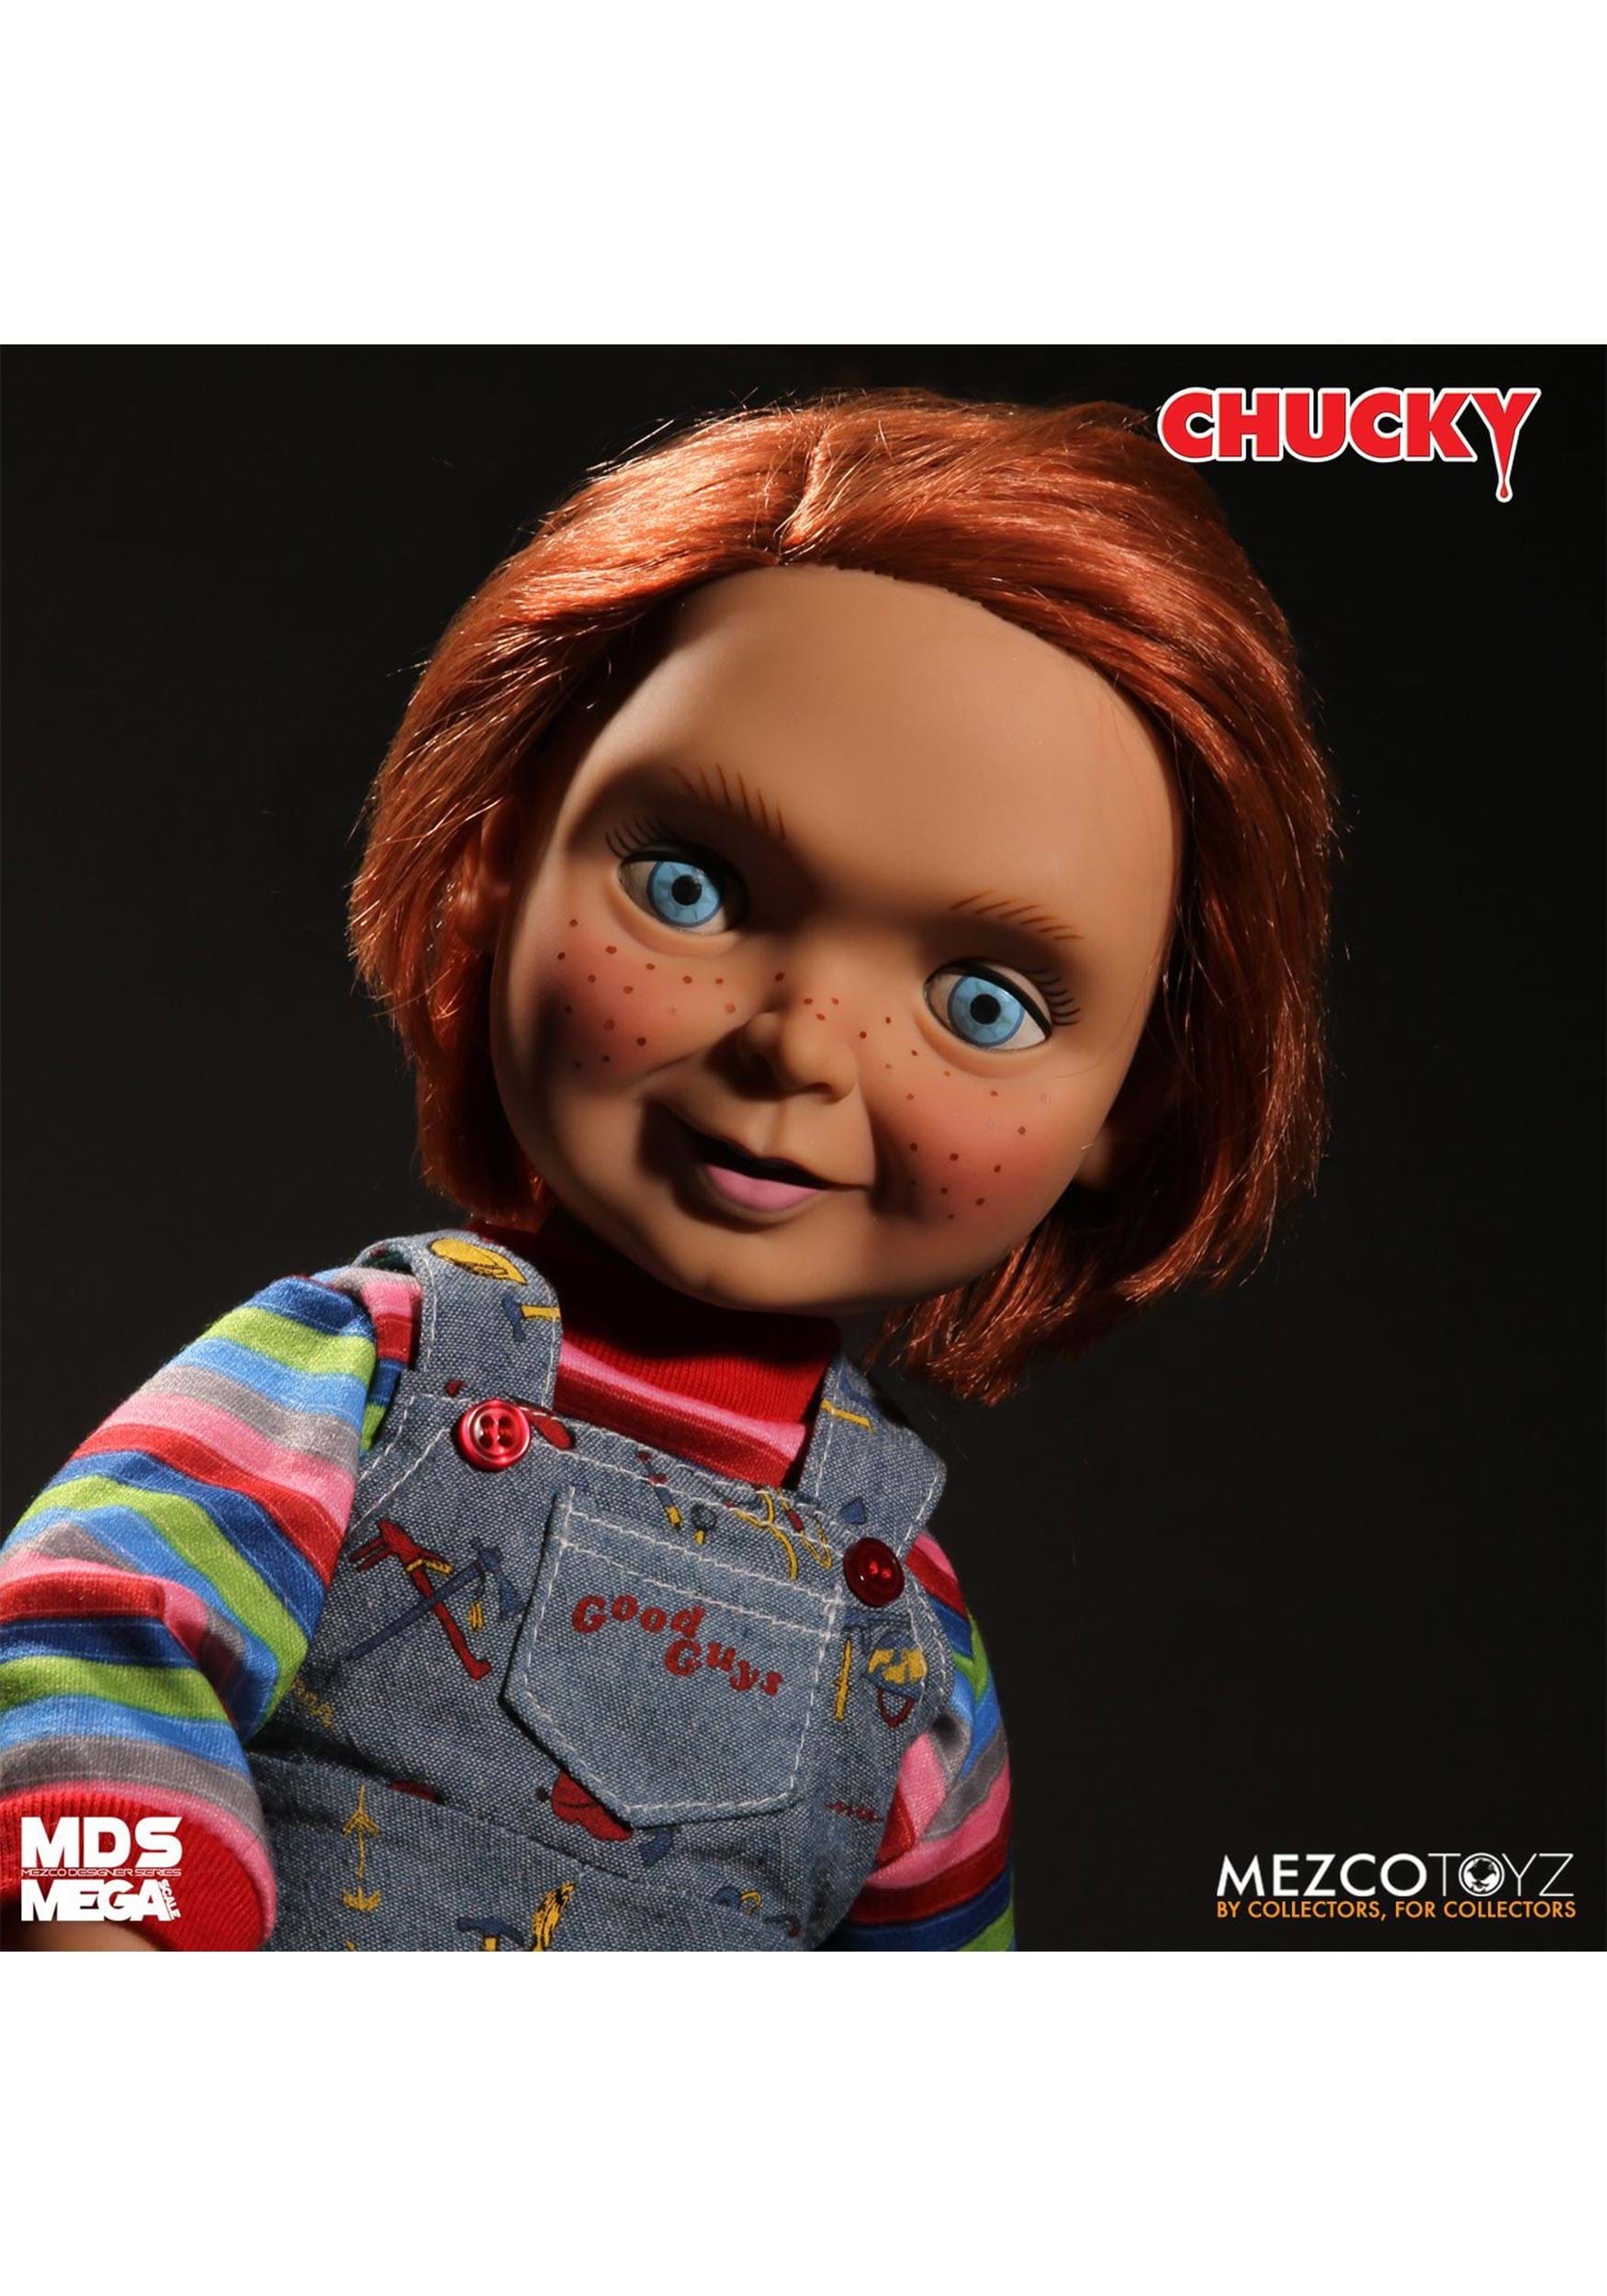 15 Good Guys Talking Doll Chucky , Chucky Dolls